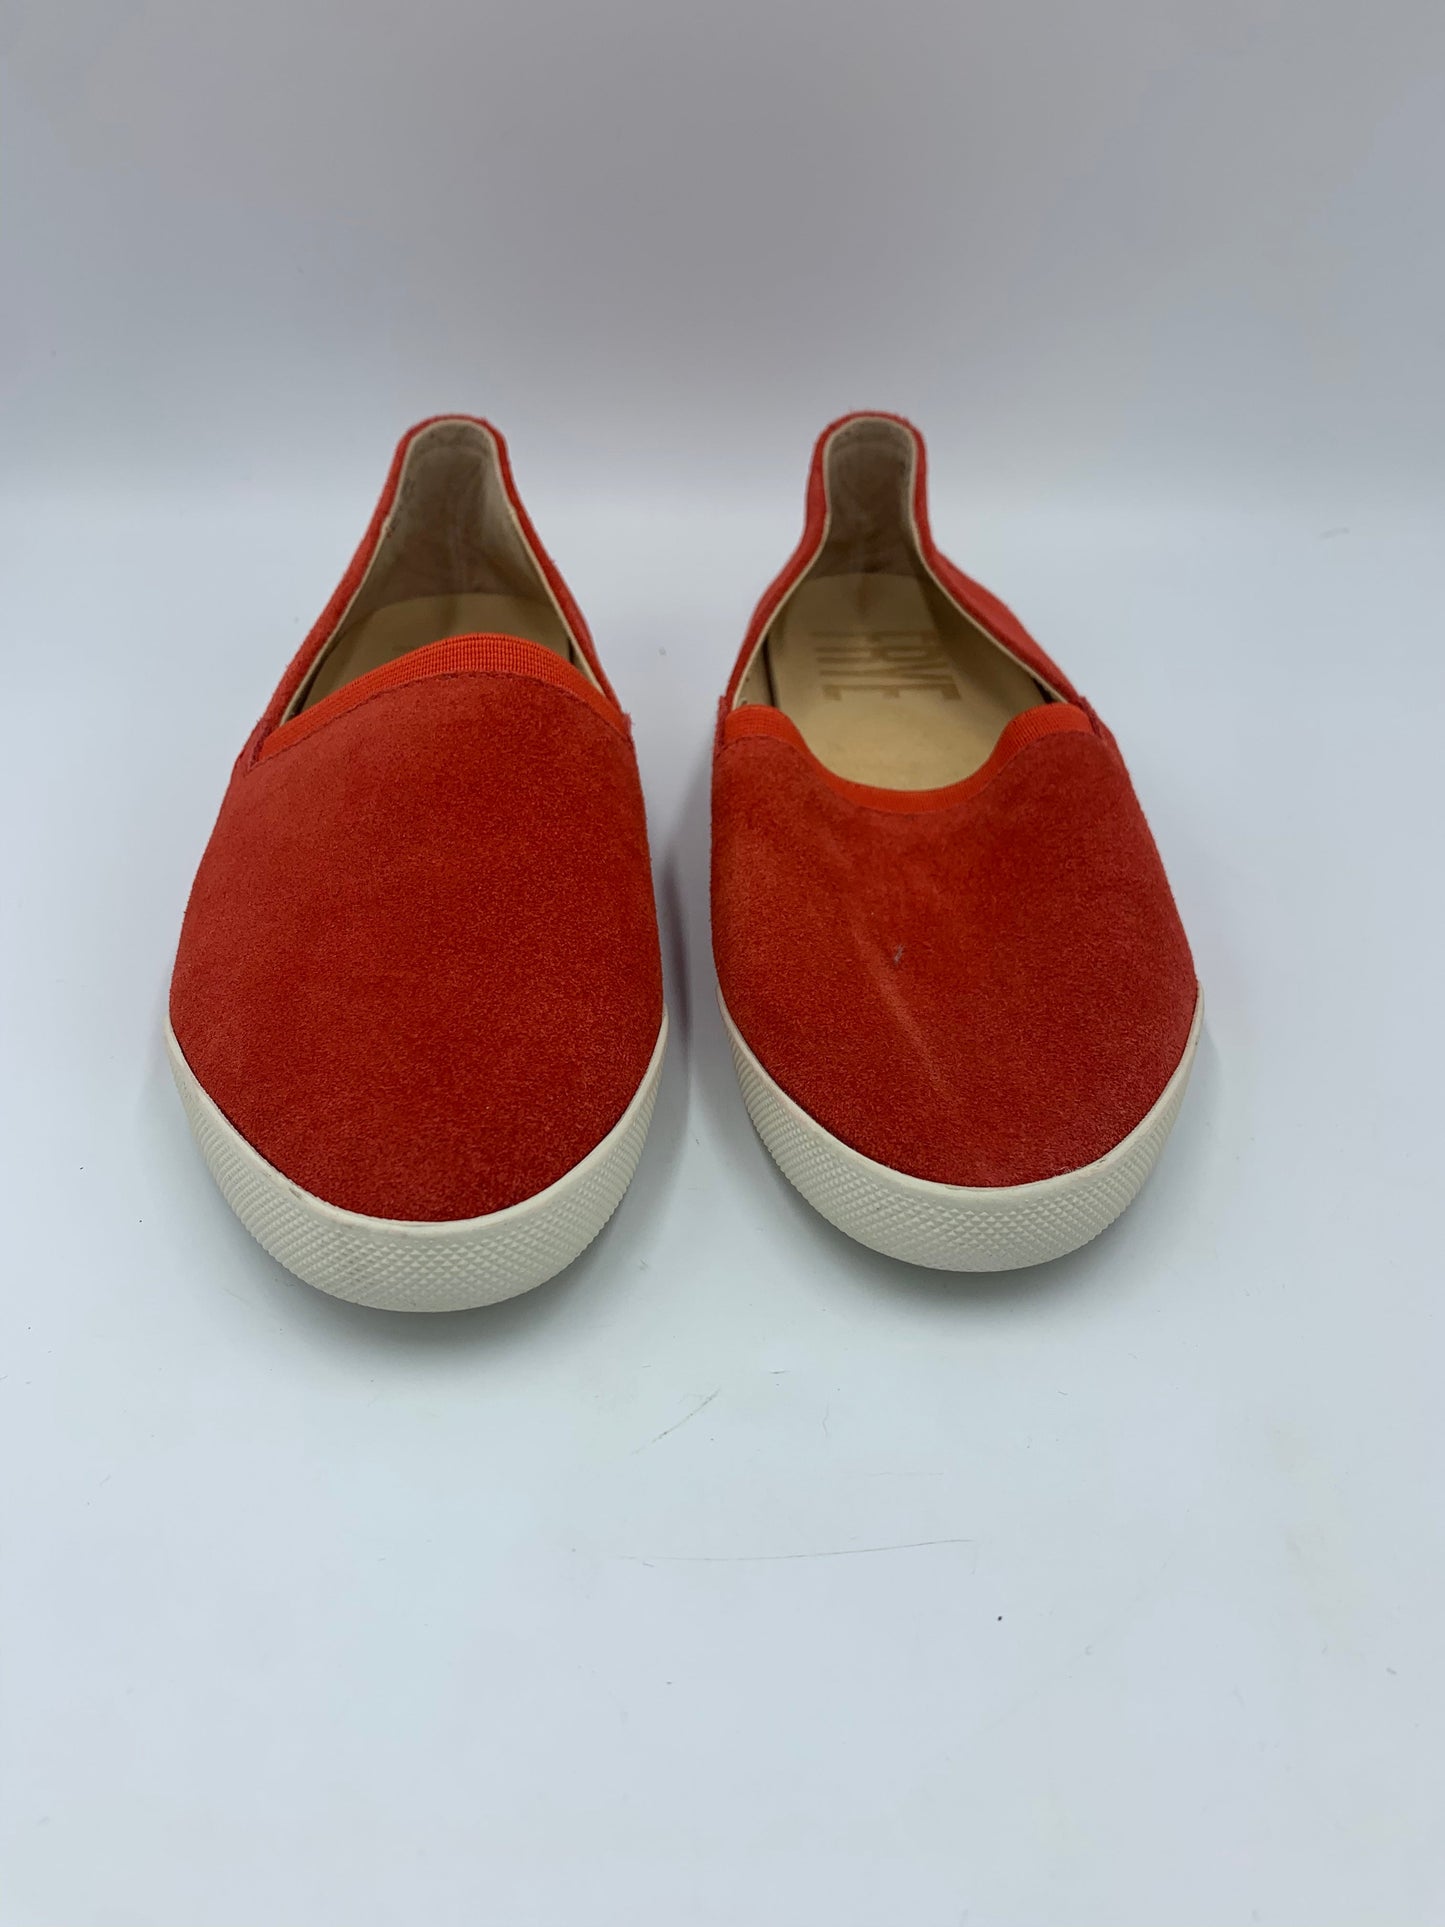 Orange Shoes Designer Frye, Size 7